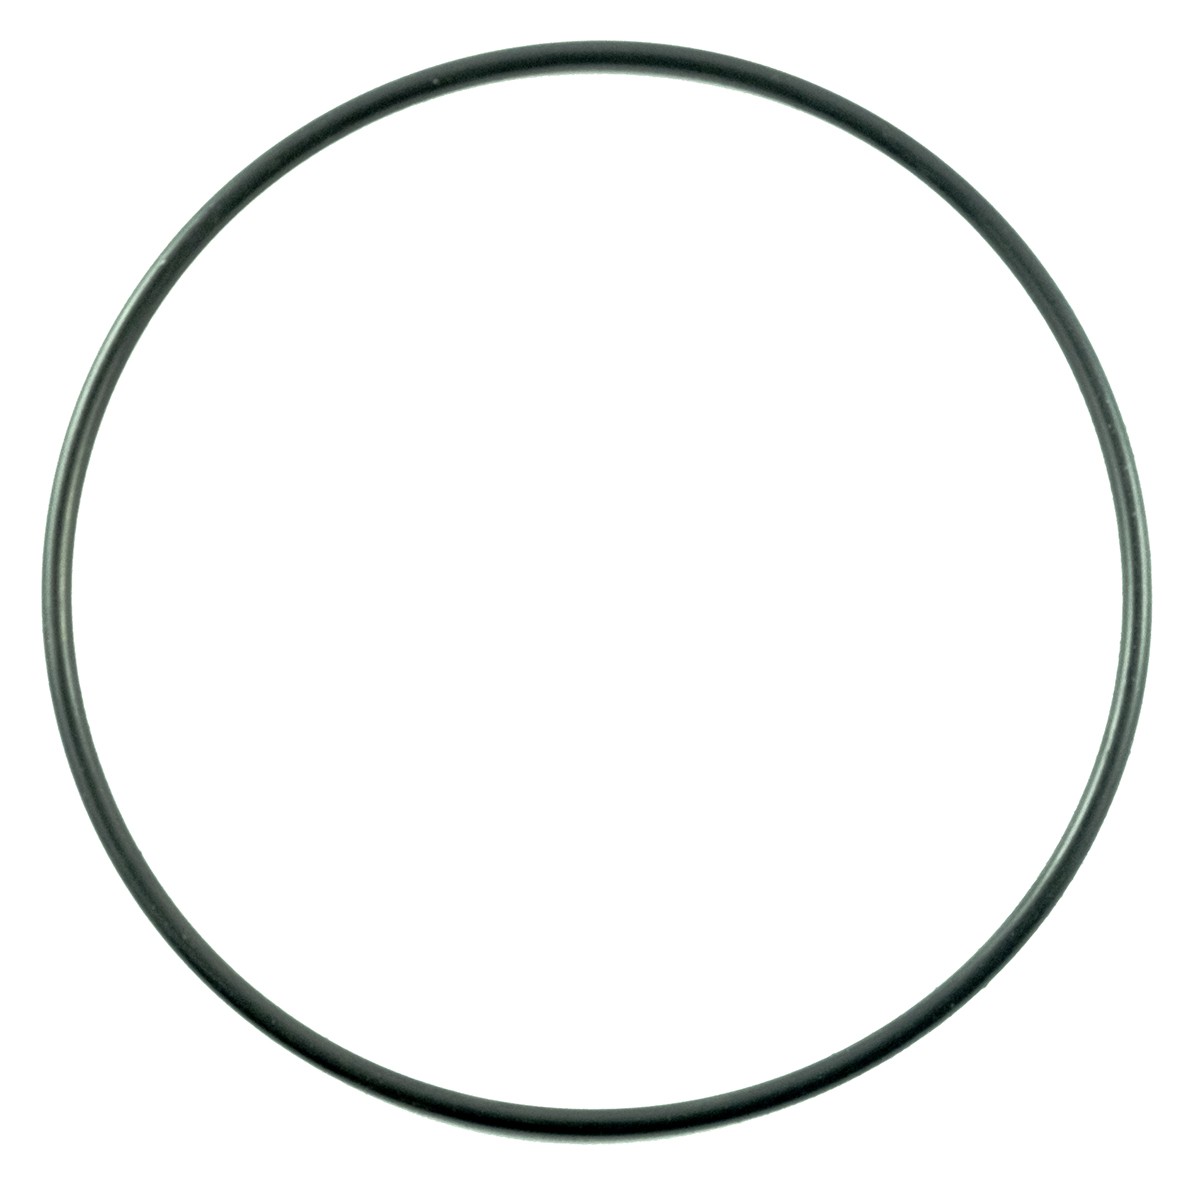 O-ring 104.40 x 3.1 mm / LS MT3.35 / LS MT3.40 / S802105010 / 40117166